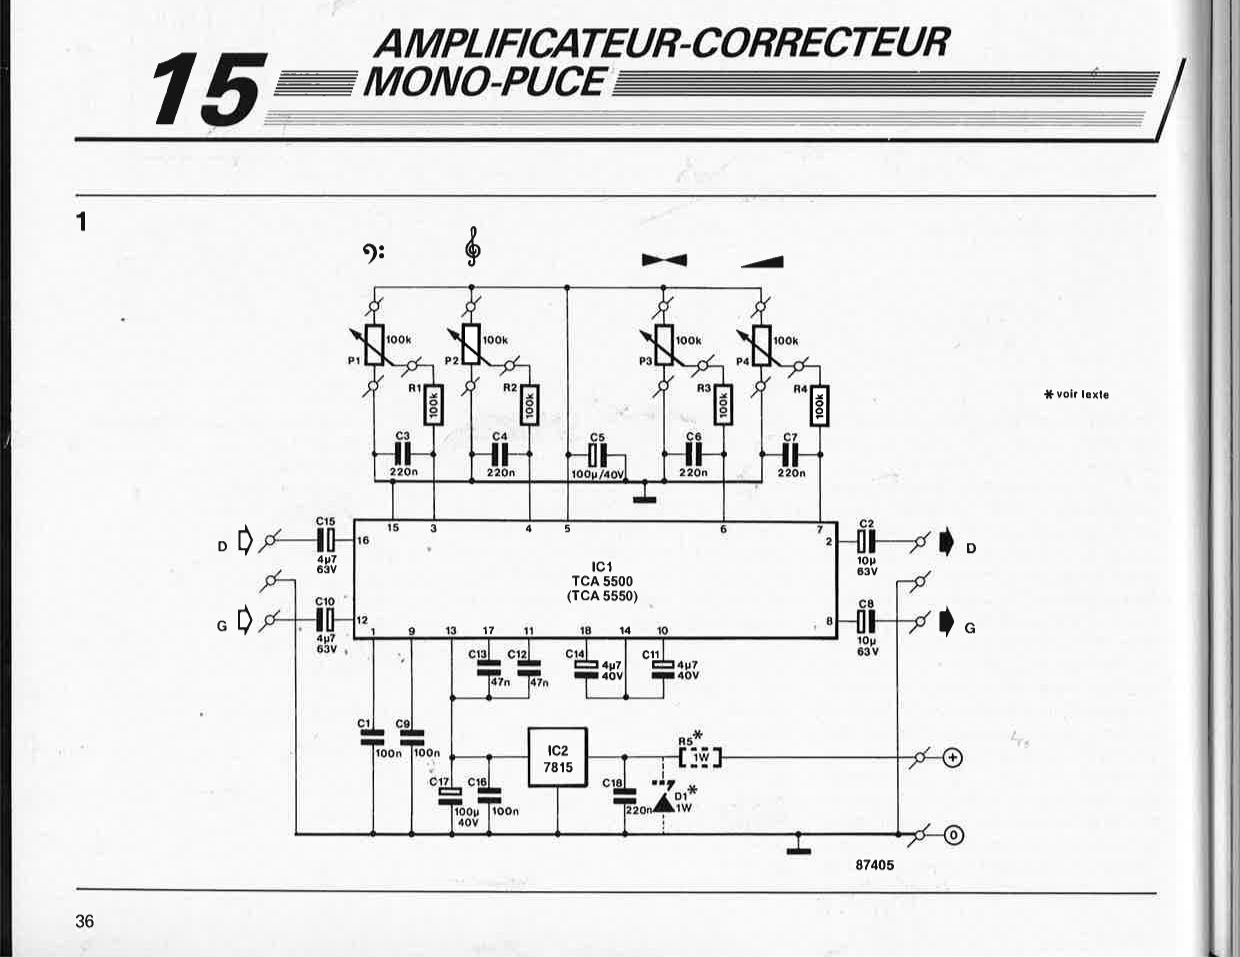 amplificateur-correcteur mono-puce